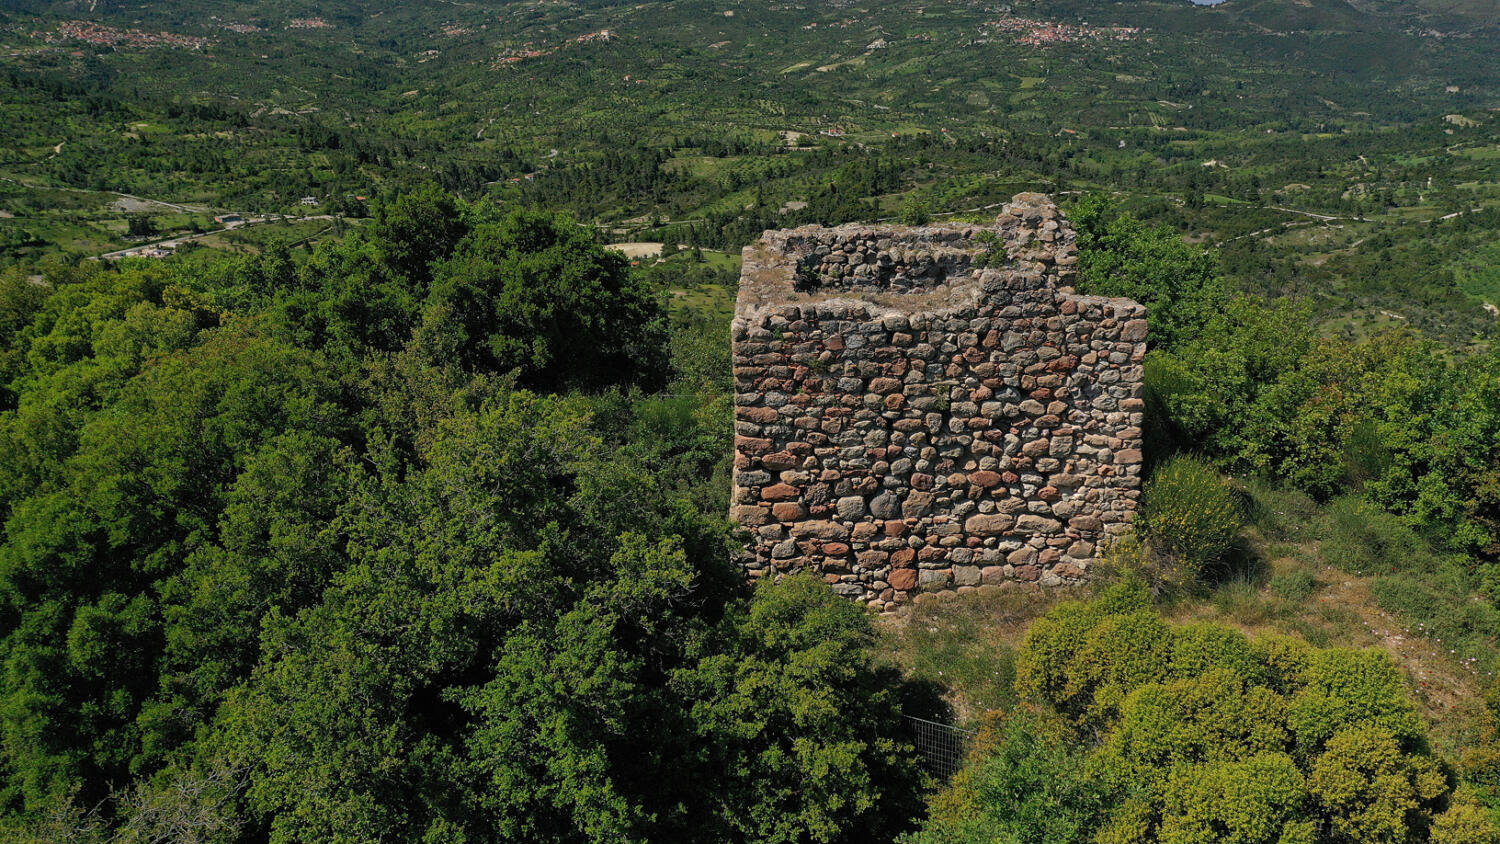 Φράγκικος πύργος, χωριό Άνω Κουρούνι. Φωτογραφία: ©Βασίλης Συκάς, για τον Δήμο Κύμης-Αλιβερίου